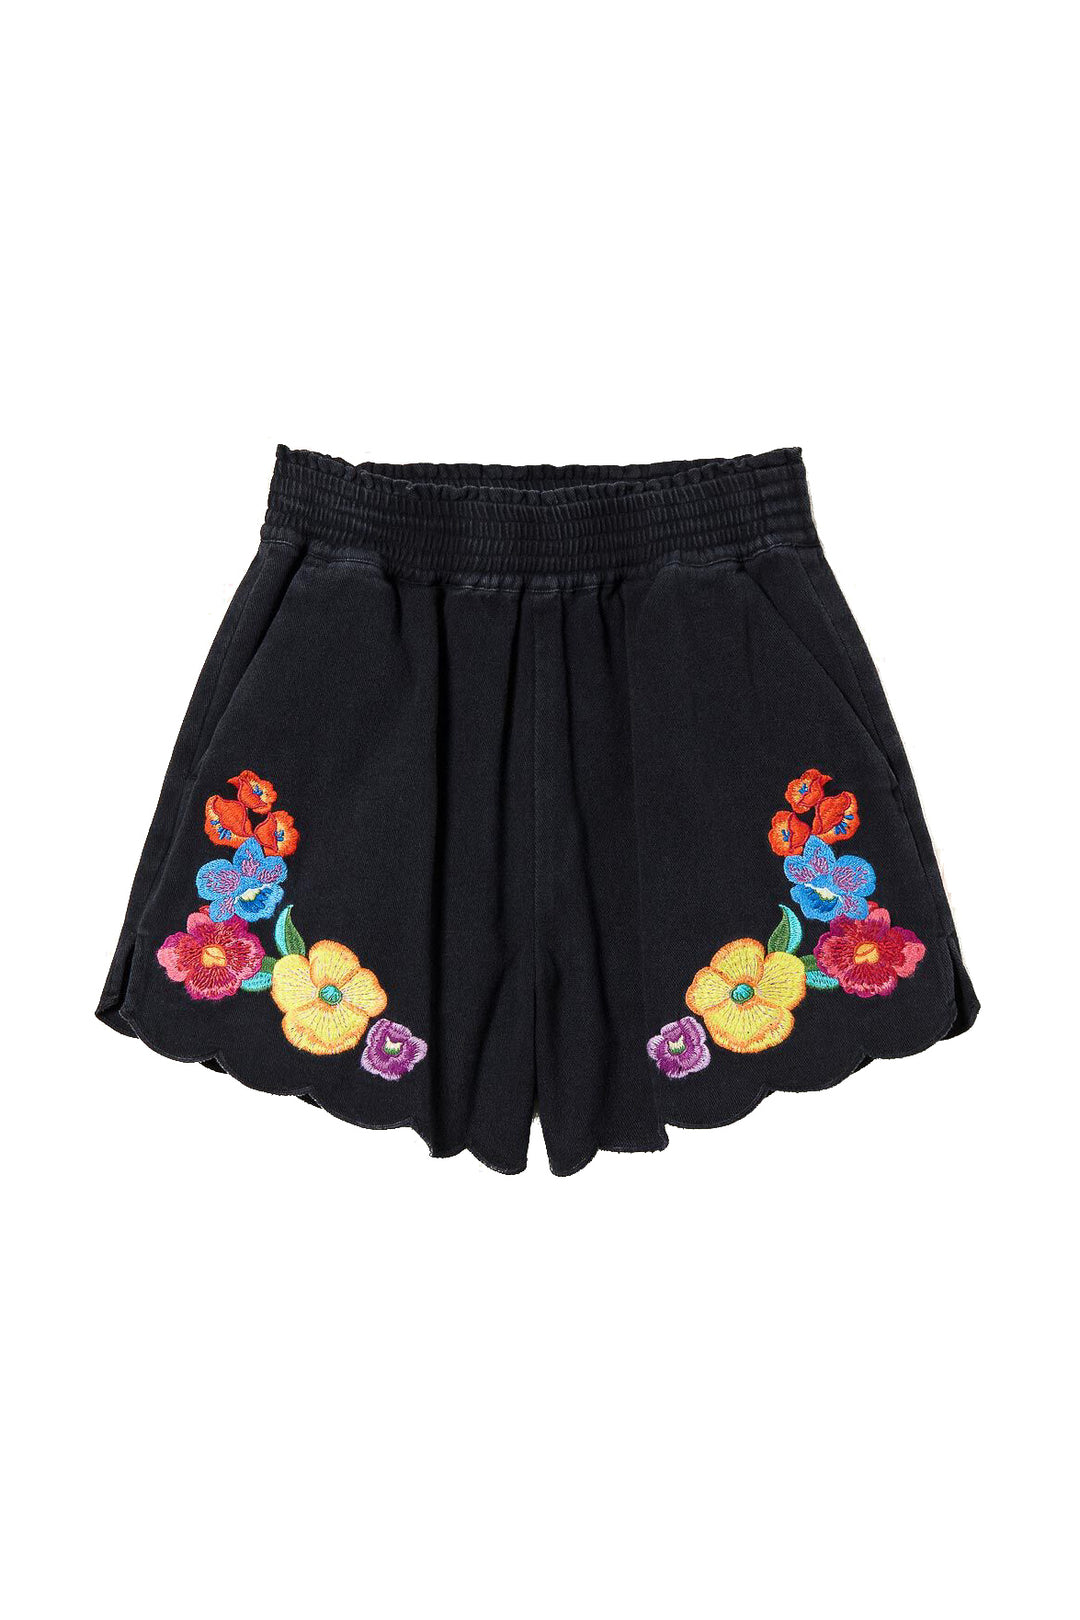 TWINSET Shorts in bull con fiori multicolor neri - Mancinelli 1954